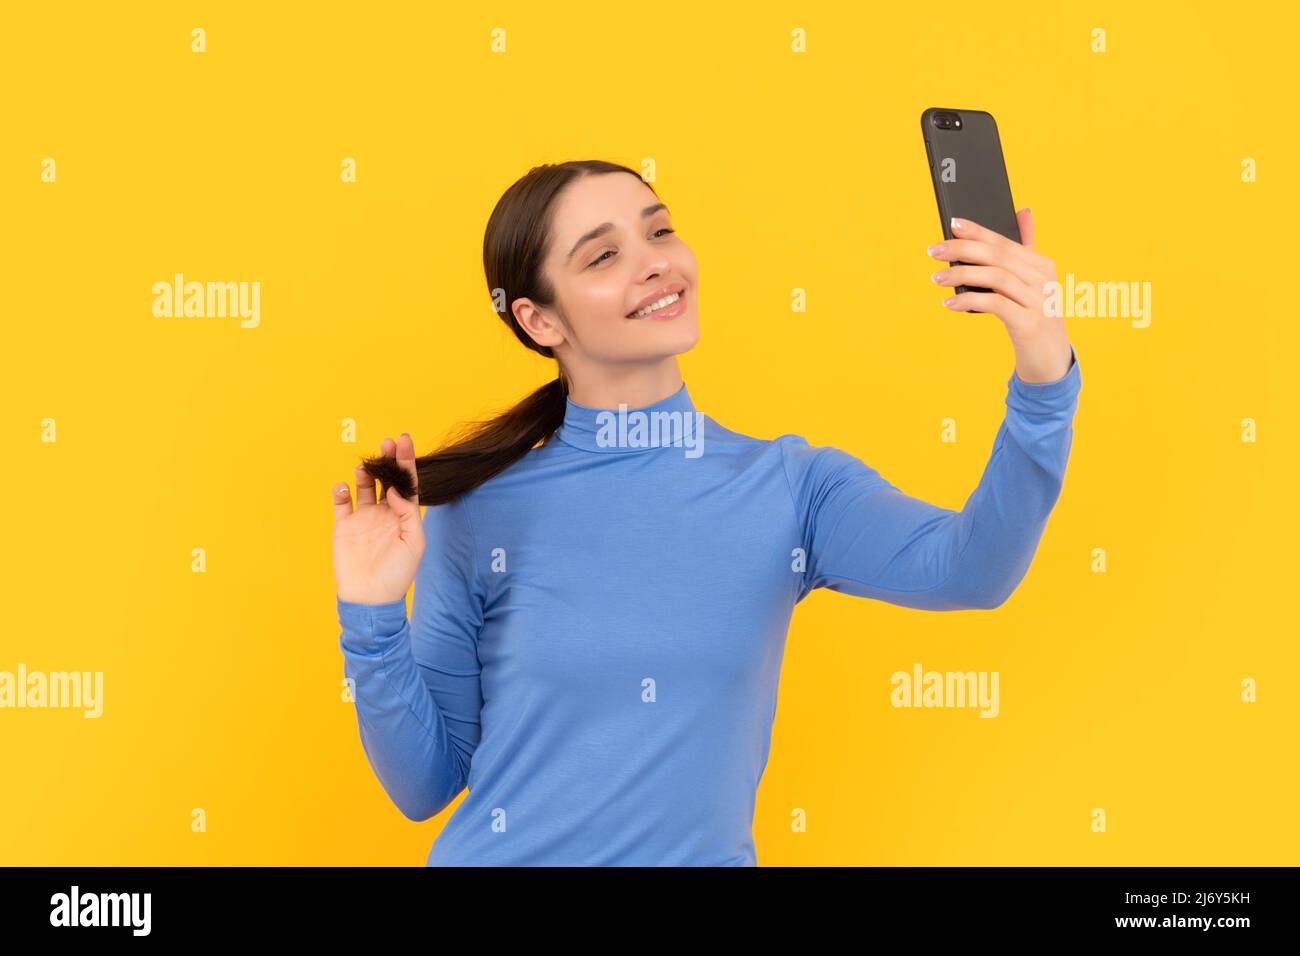 Lächelnde Frau macht Selfie Foto auf dem Smartphone, Selfie Stockfoto